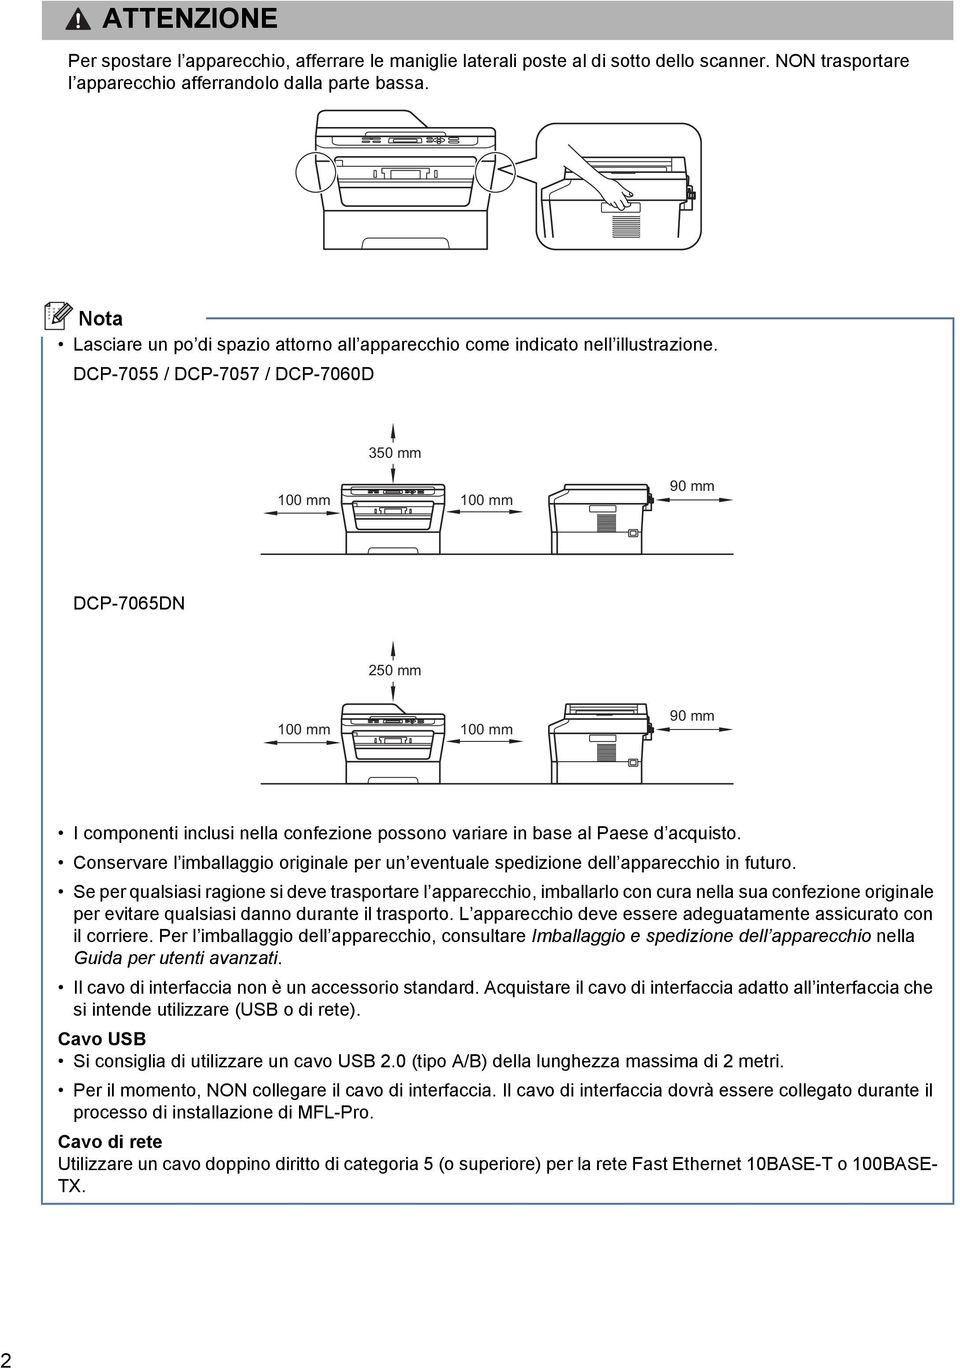 DCP-7055 / DCP-7057 / DCP-7060D 350 mm 100 mm 100 mm 90 mm DCP-7065DN 250 mm 100 mm 100 mm 90 mm I omponenti inlusi nell onfezione possono vrire in se l Pese quisto.